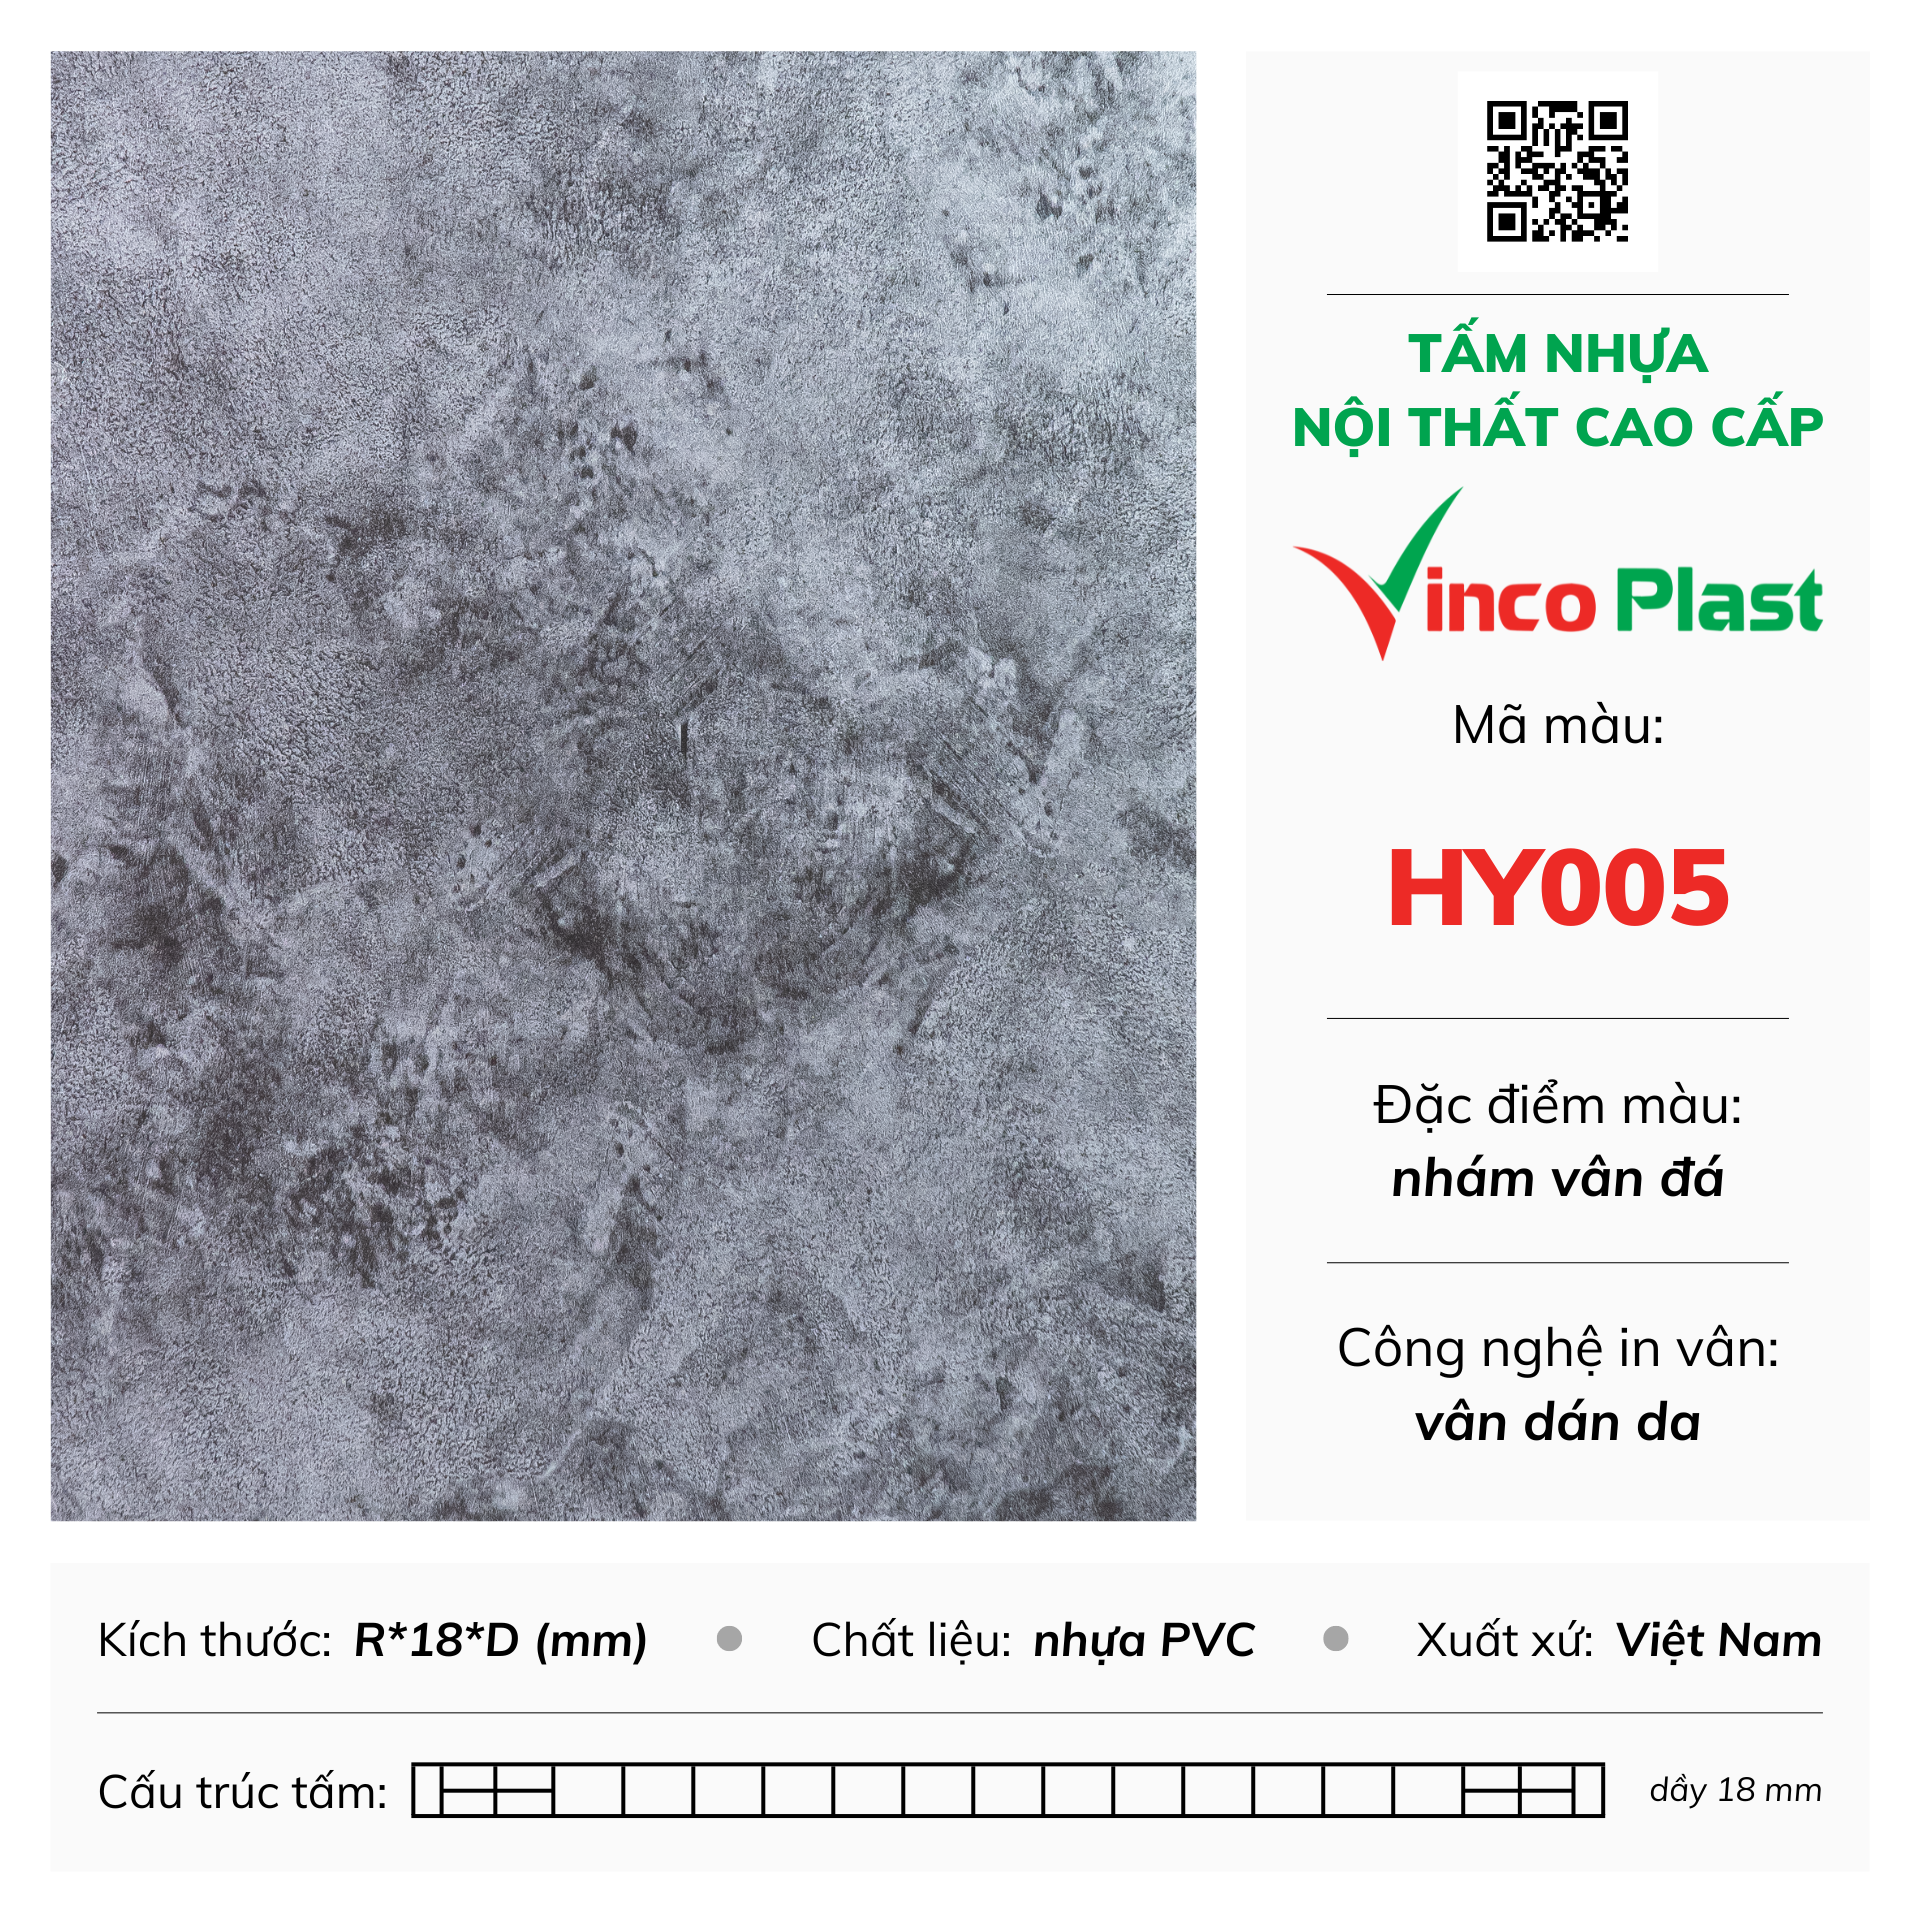 Tấm nhựa nội thất cao cấp Vincoplast màu HY005 (2)